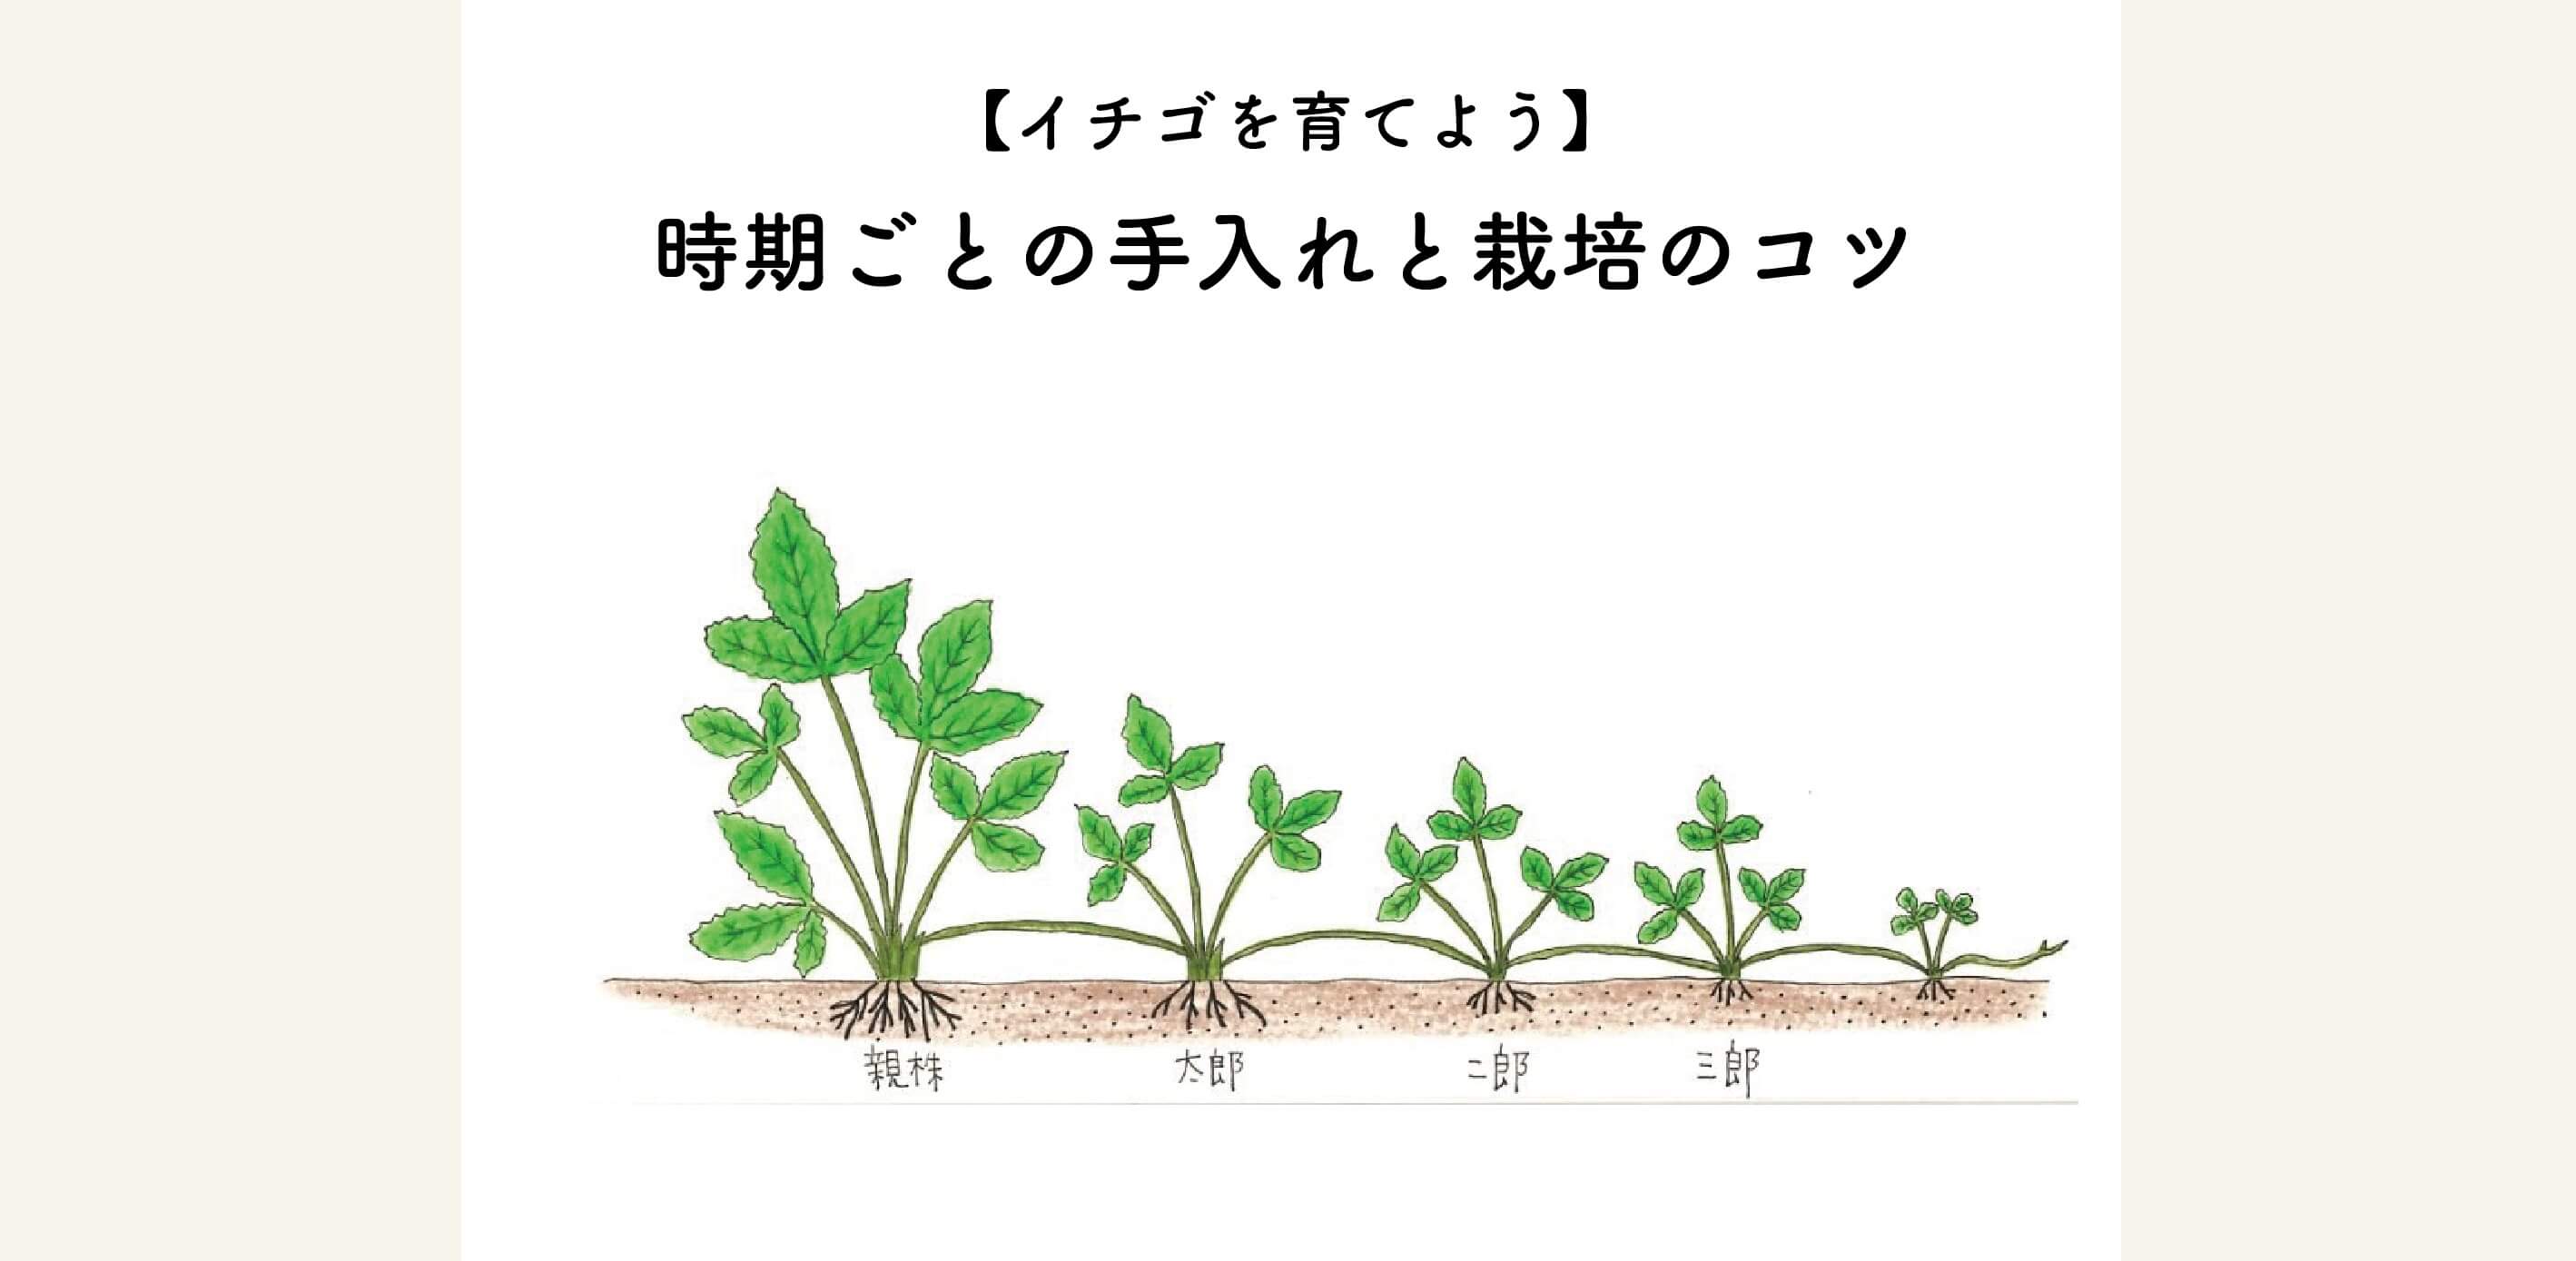 【イチゴの育て方】植え付け後のお手入れと栽培のコツ